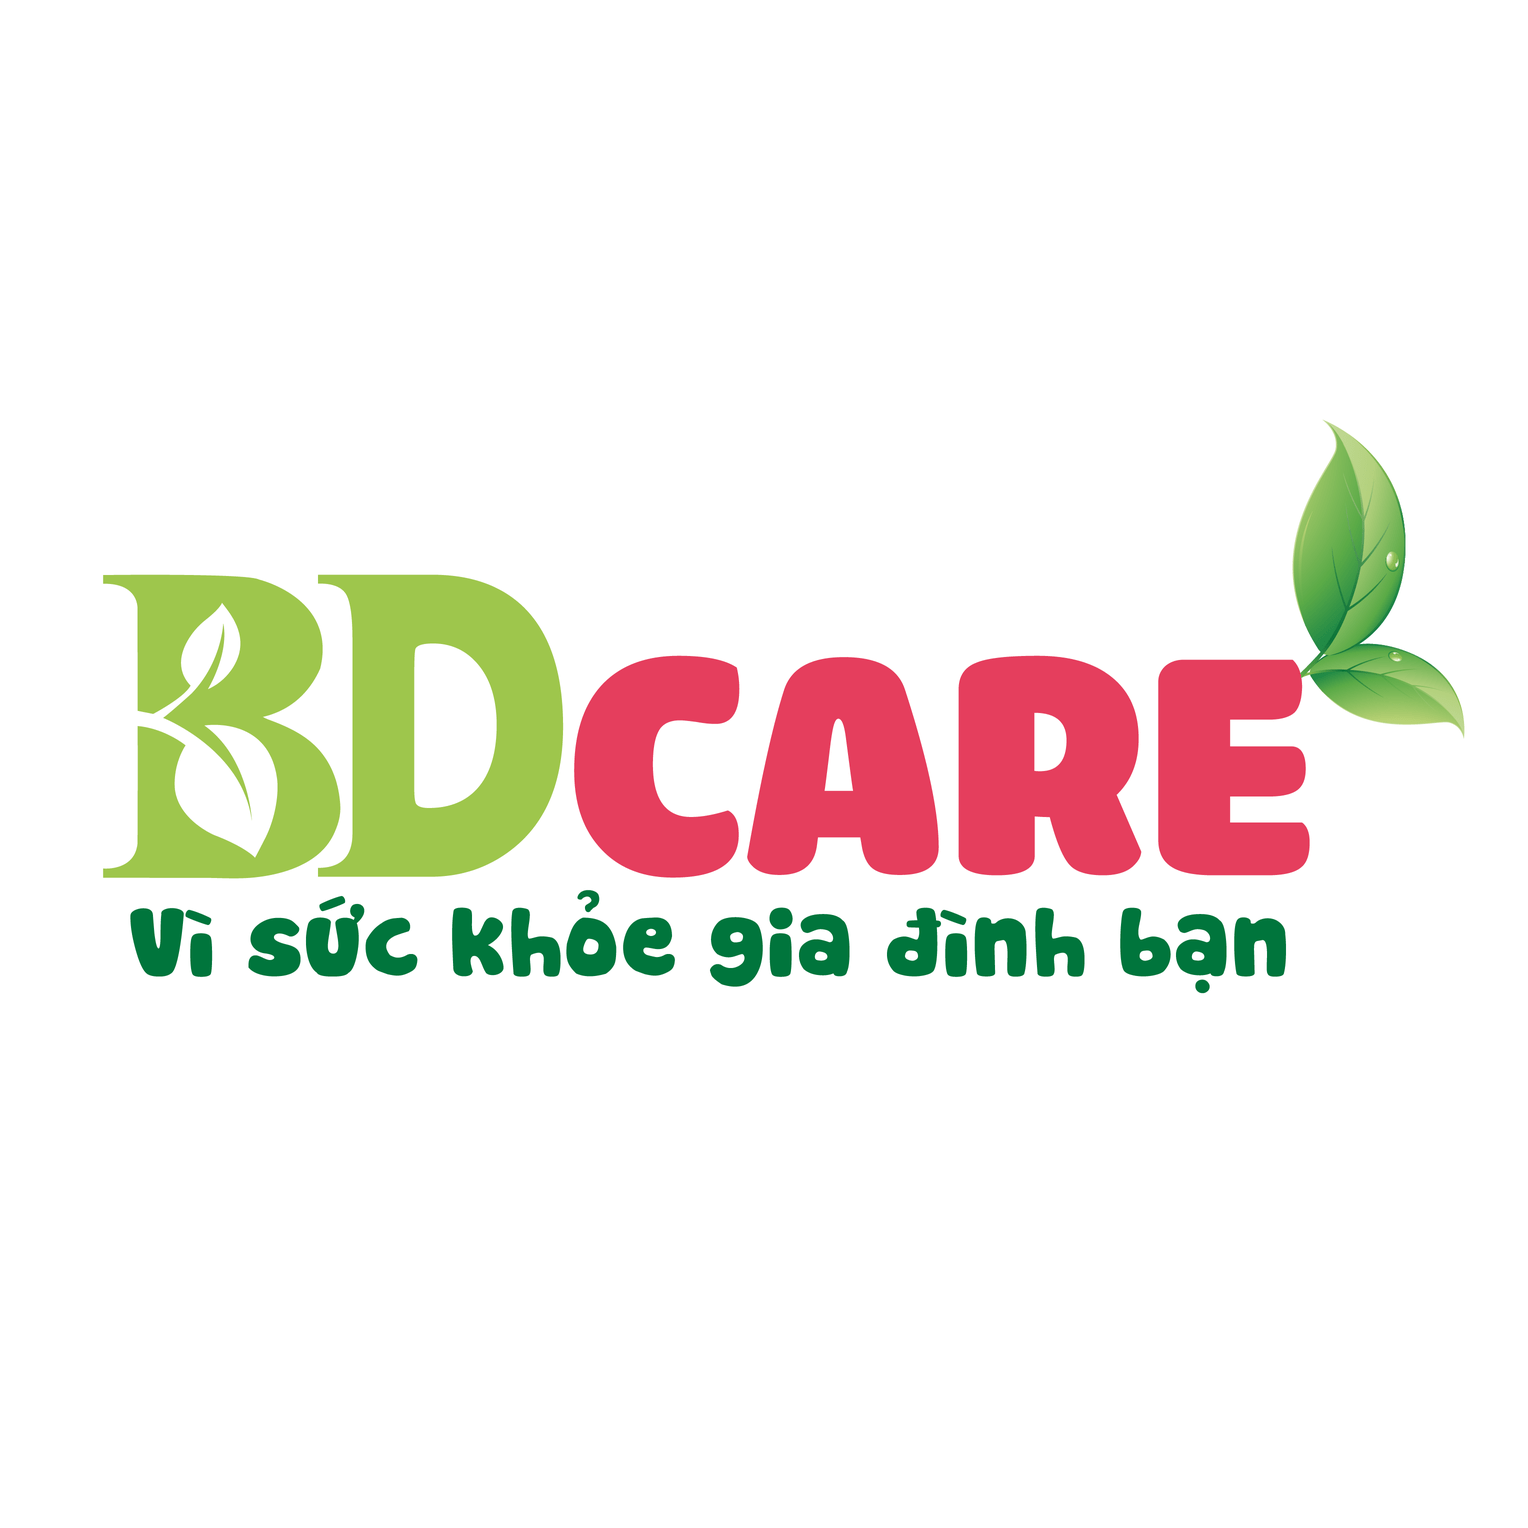 BDCare